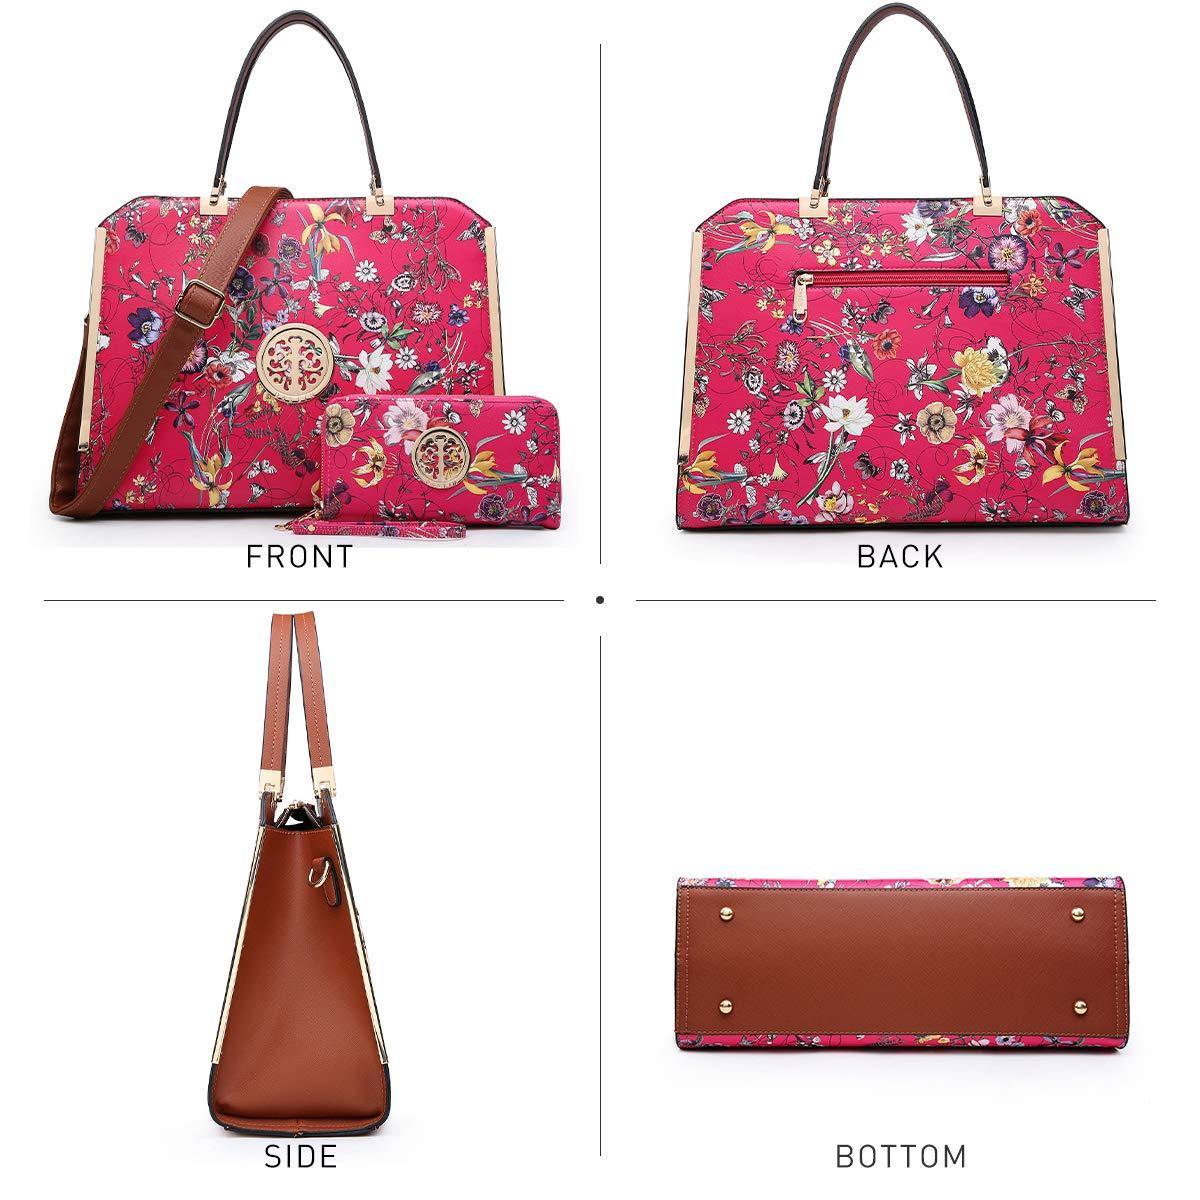 Panzexin Print Floral Handbag